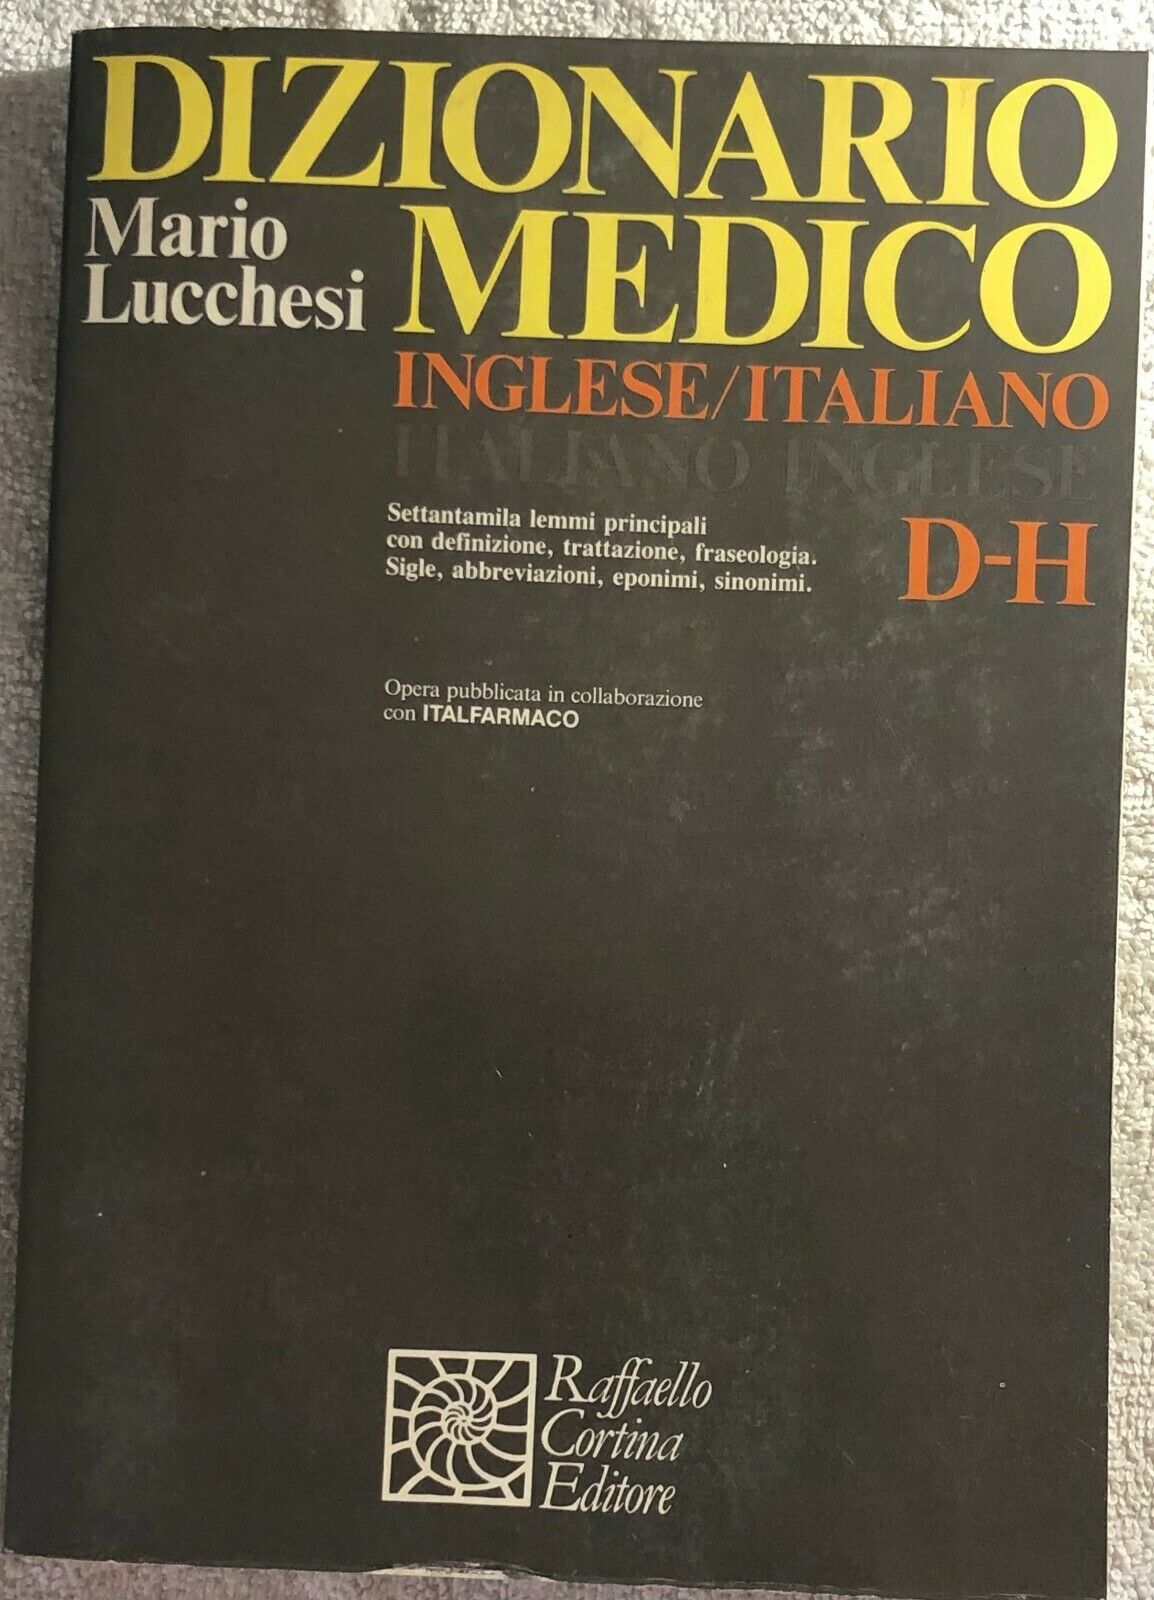 Dizionario medico Inglese-Italiano D-H di Mario Lucchesi,  1985,  Raffaello Cort